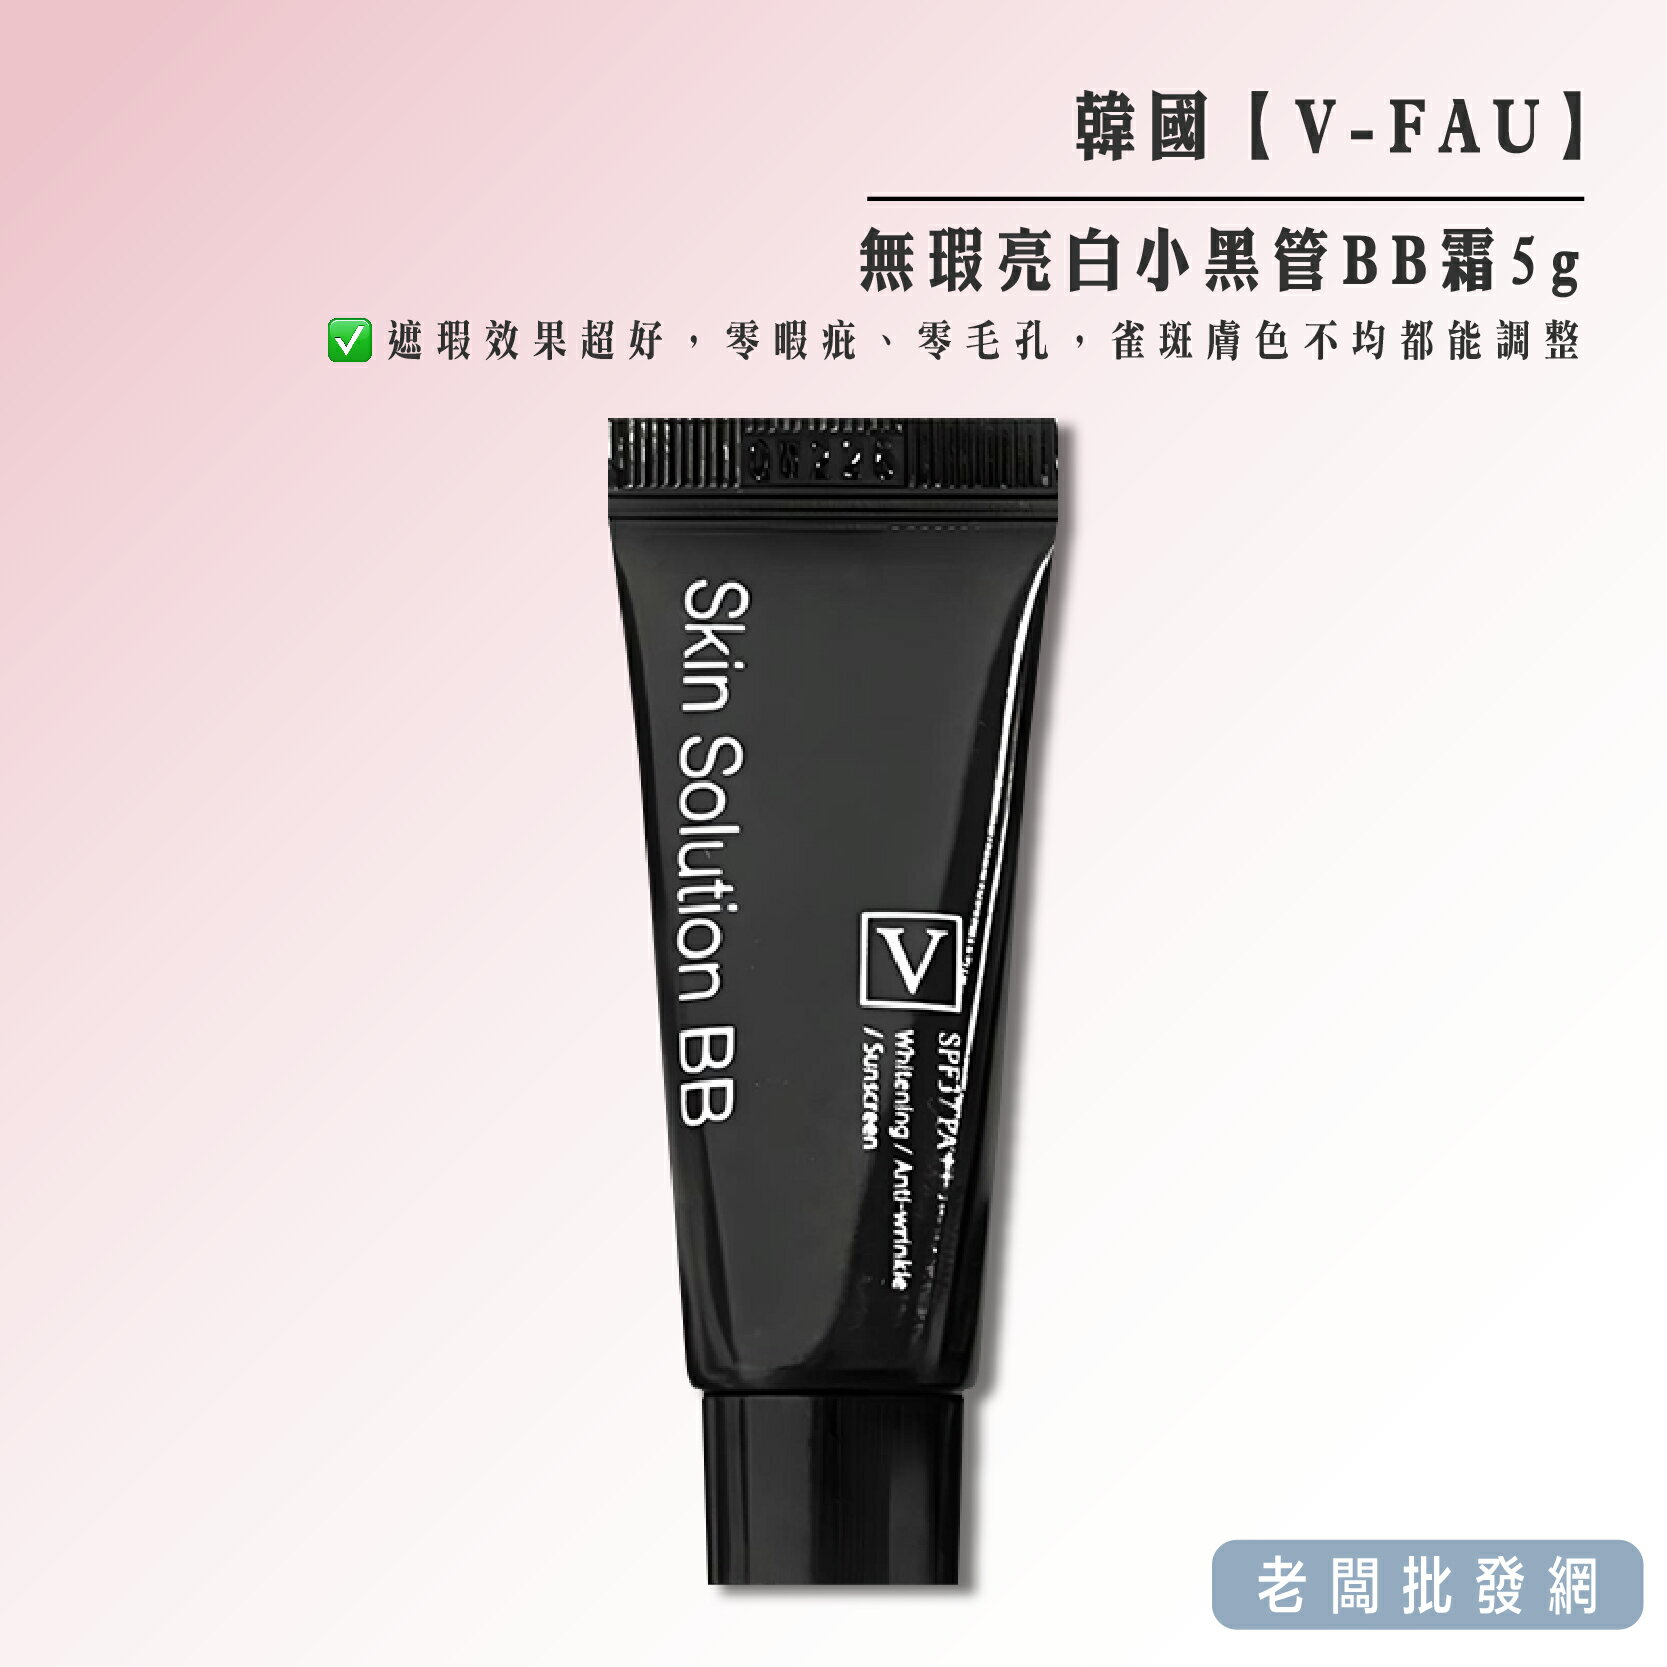 【正貨+發票】韓國製造 V-FAU 無瑕亮白小黑管BB霜5g 效期2026.10.03【老闆批發網】